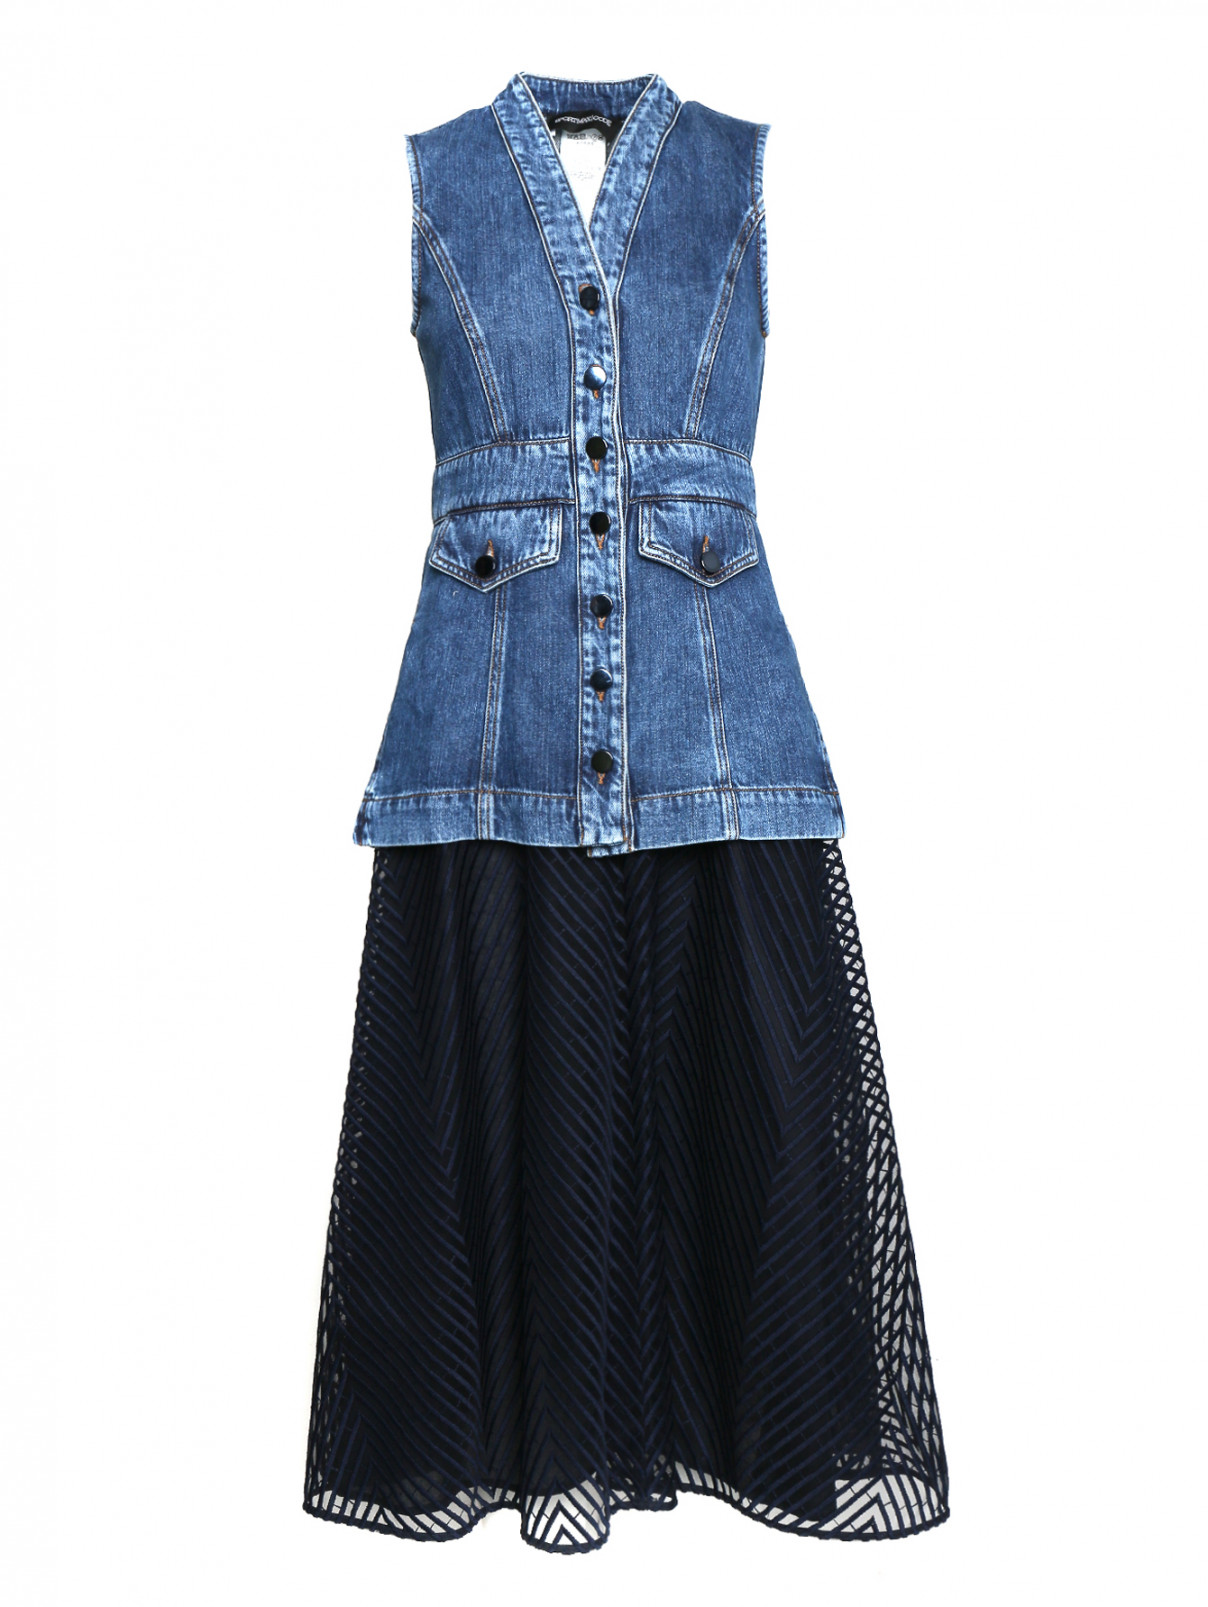 Платье джинсовое без рукавов Max Mara  –  Общий вид  – Цвет:  Синий